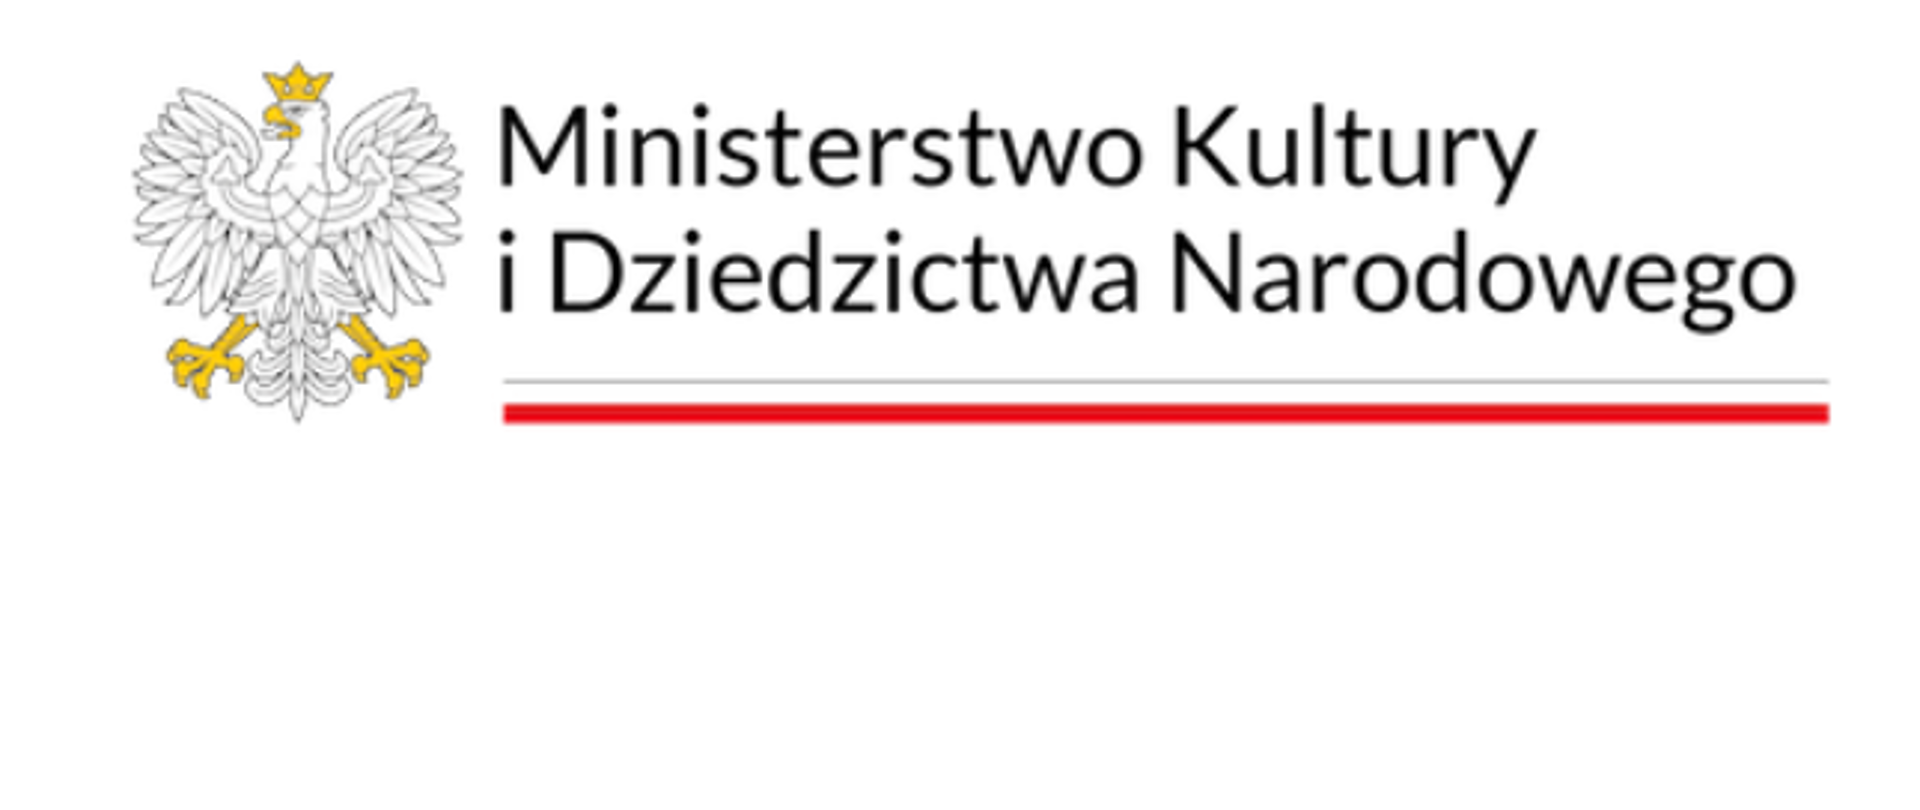 Zdjęcie przedstawia Białego Orła z napisem Ministerstwo Kultury i Dziedzictwa Narodowego oraz Flaga Polski oraz Godło